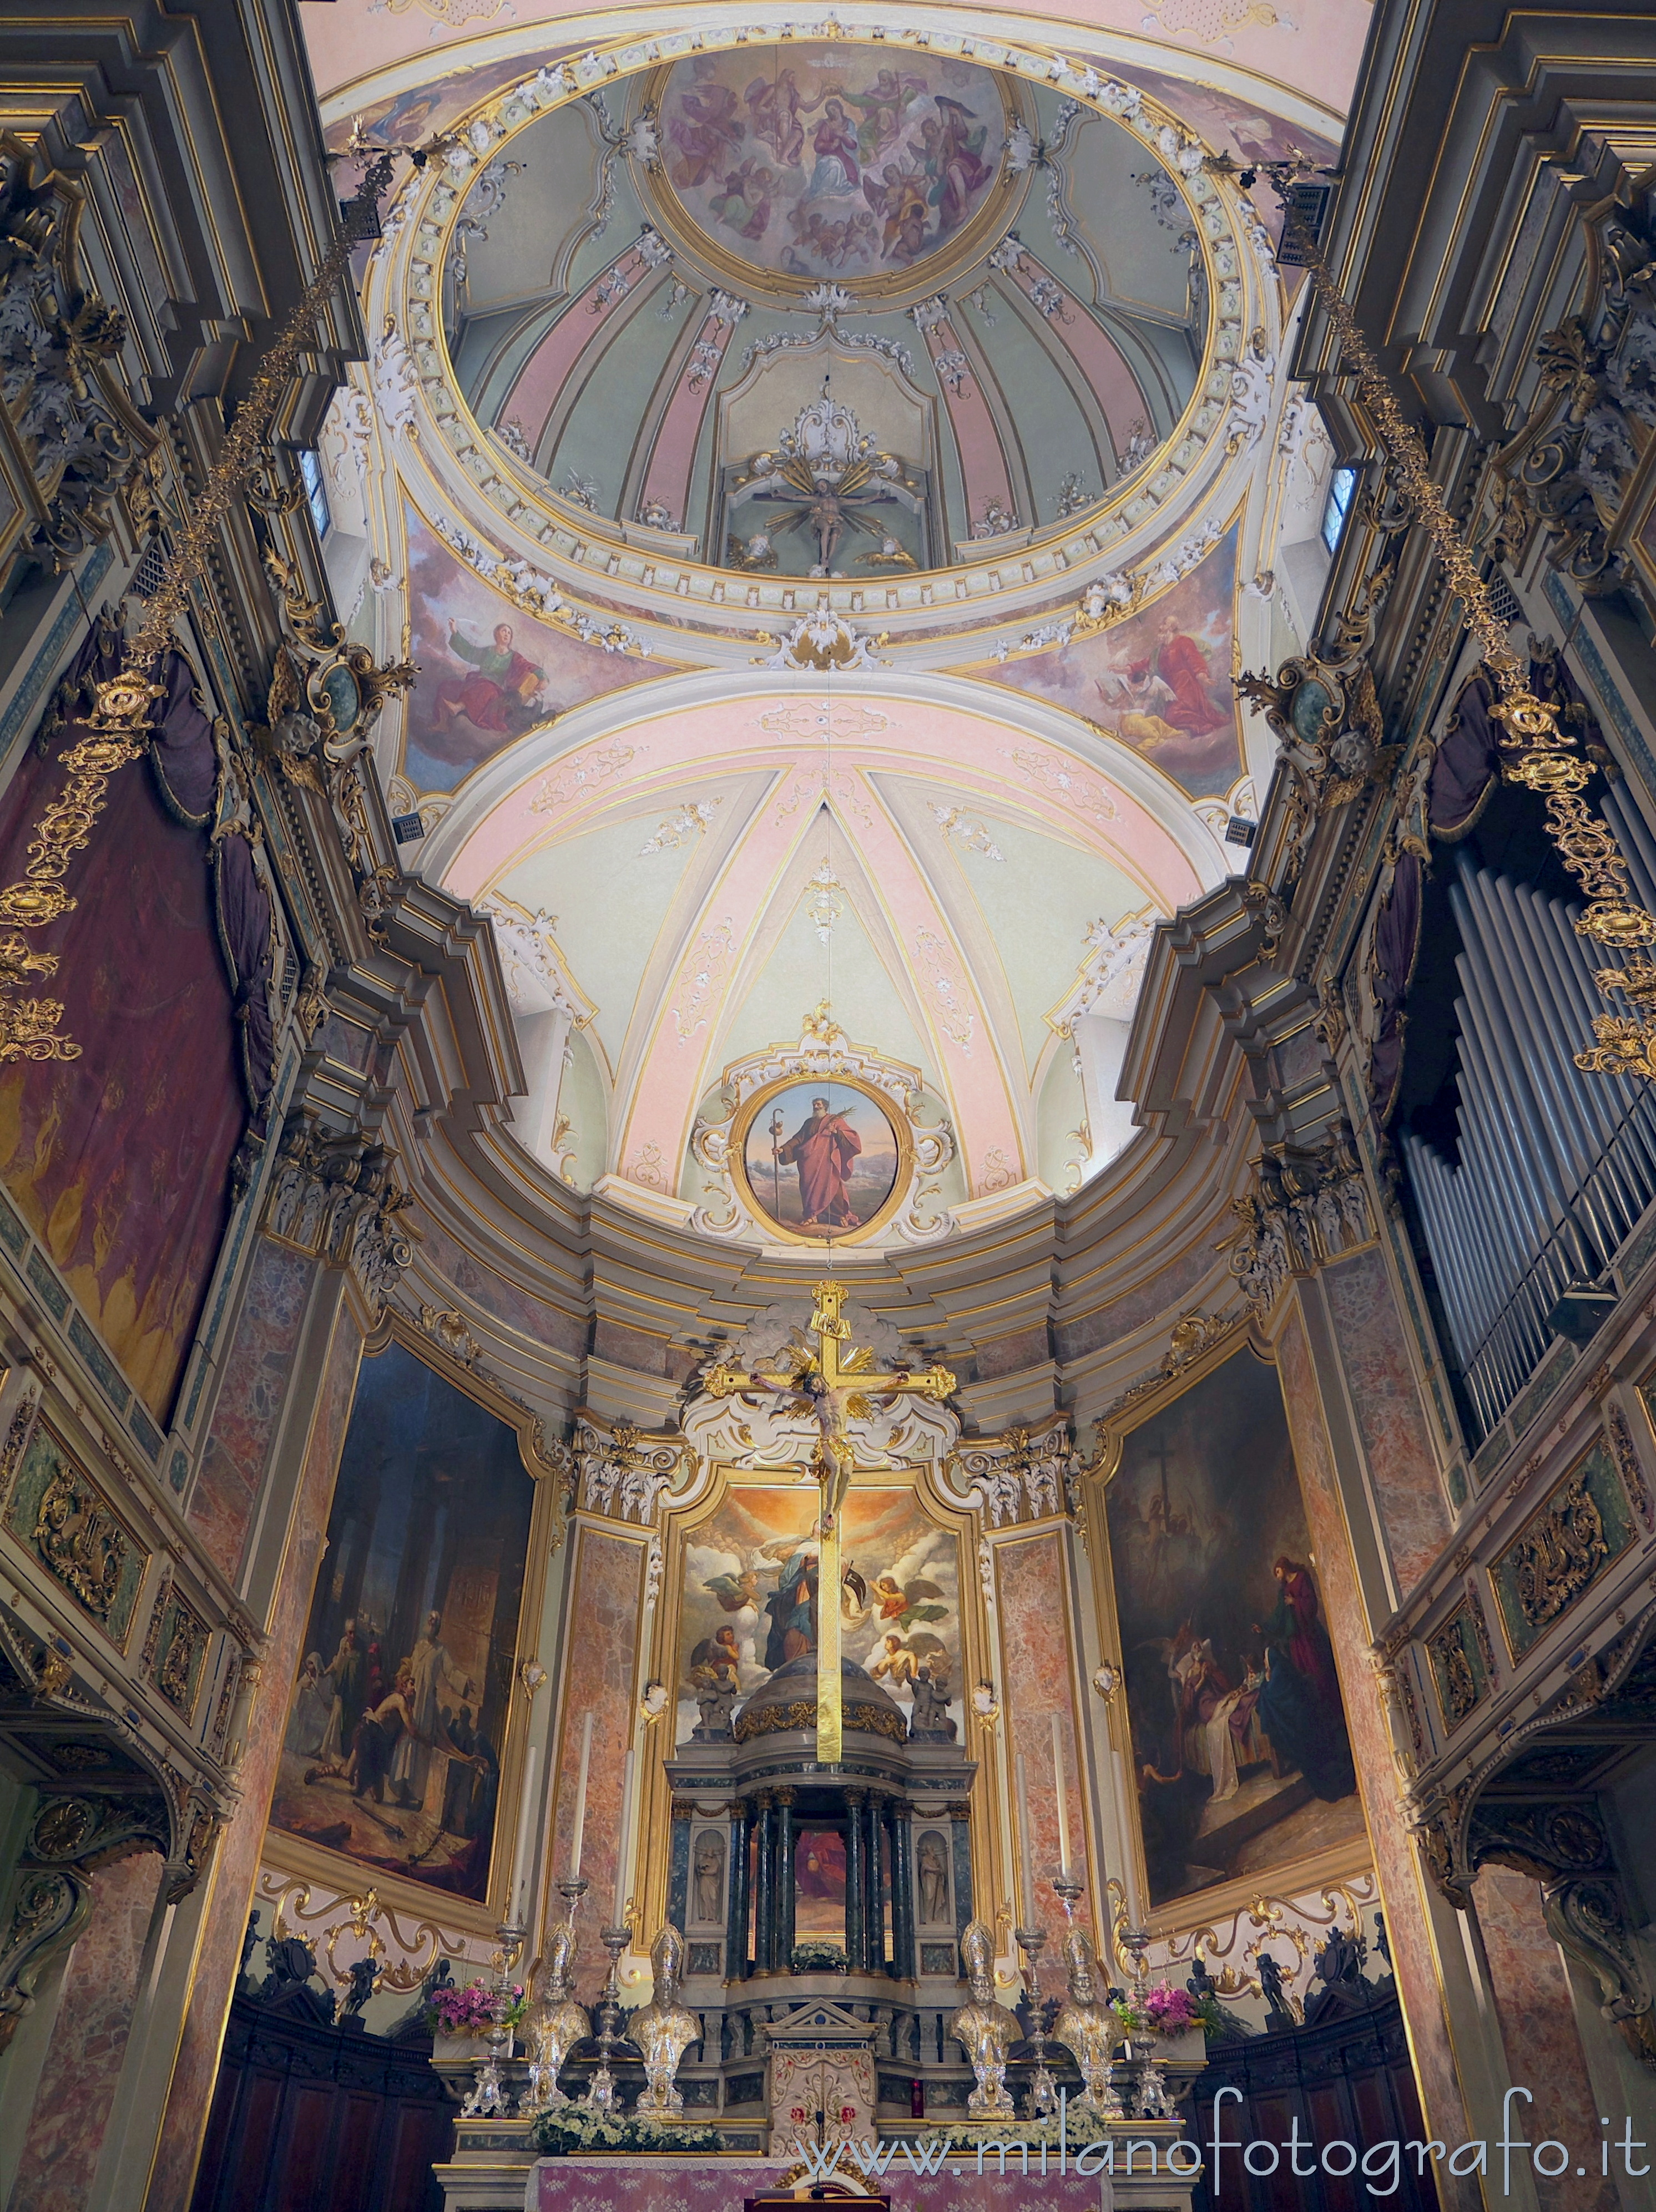 Romano di Lombardia (Bergamo, Italy): Interior of the apse of the Church of Santa Maria Assunta e San Giacomo Maggiore - Romano di Lombardia (Bergamo, Italy)